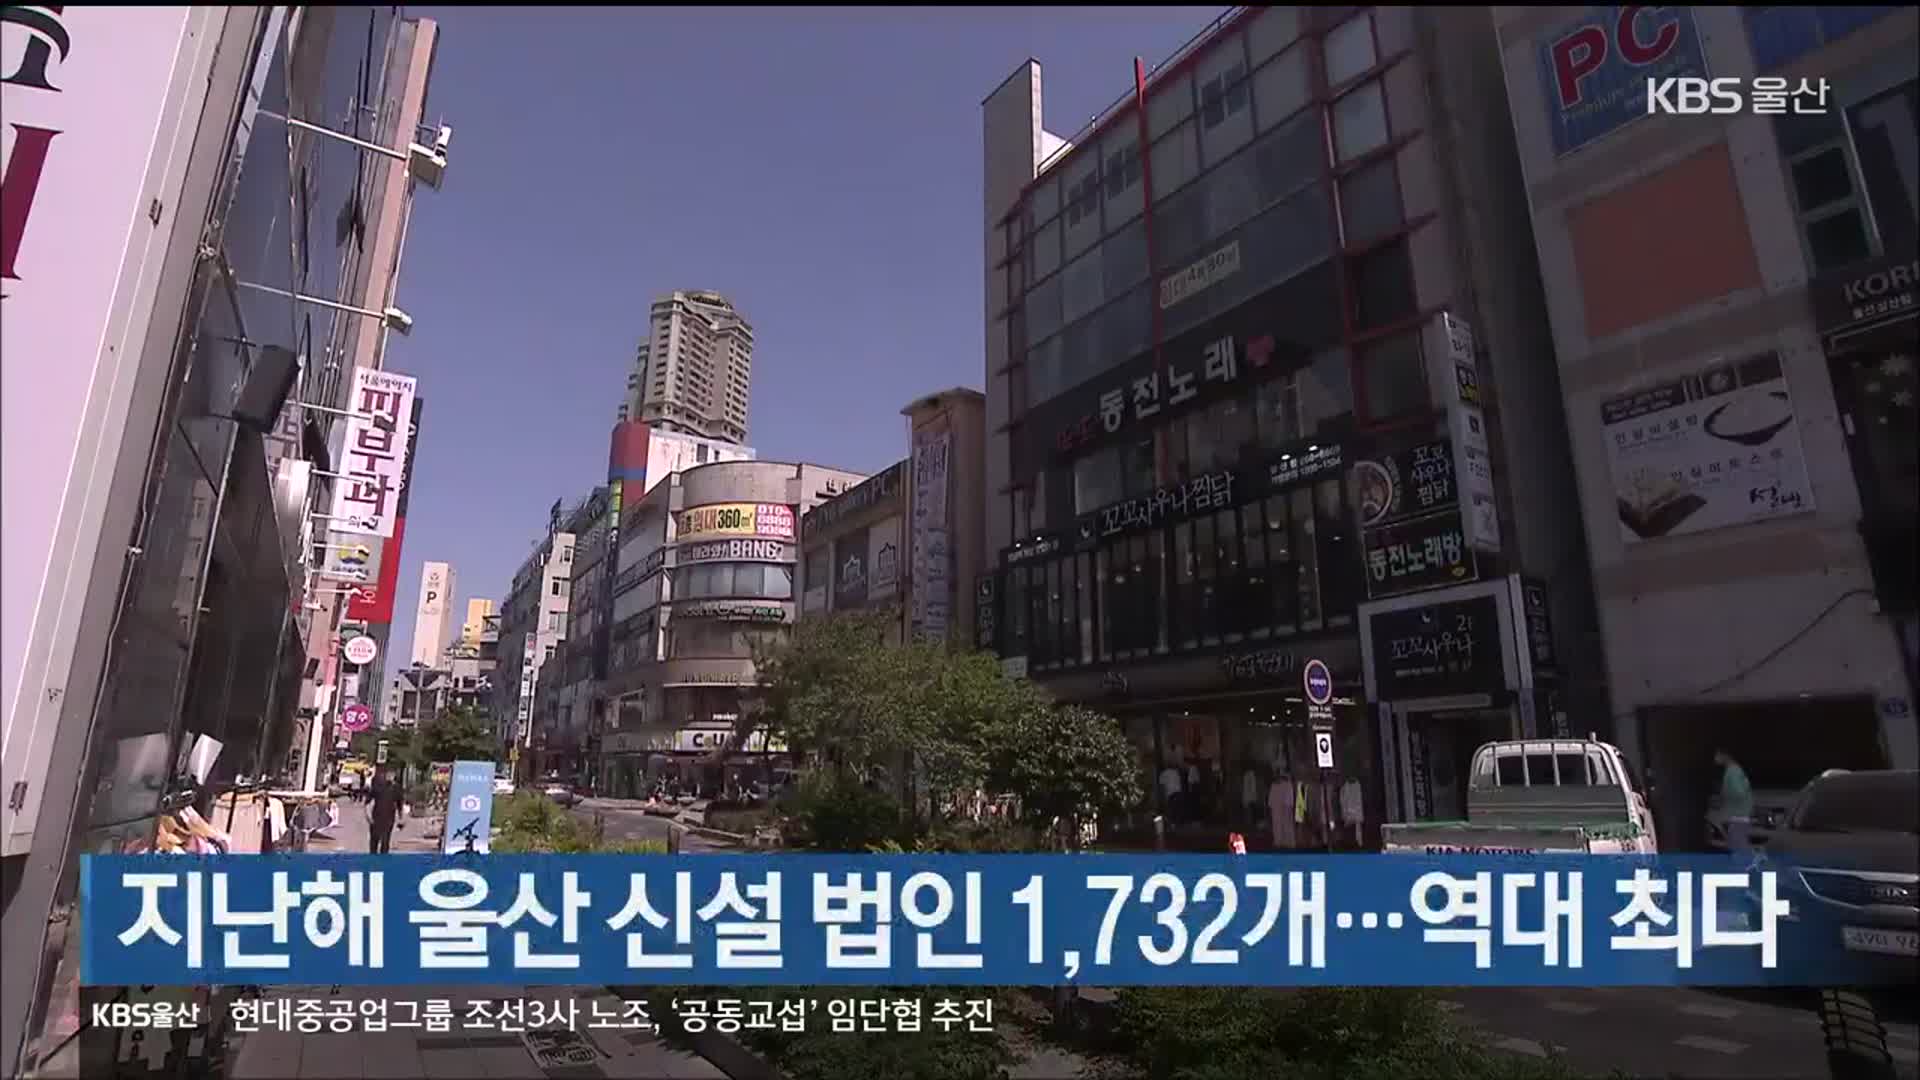 지난해 울산 신설 법인 1,732개…역대 최다